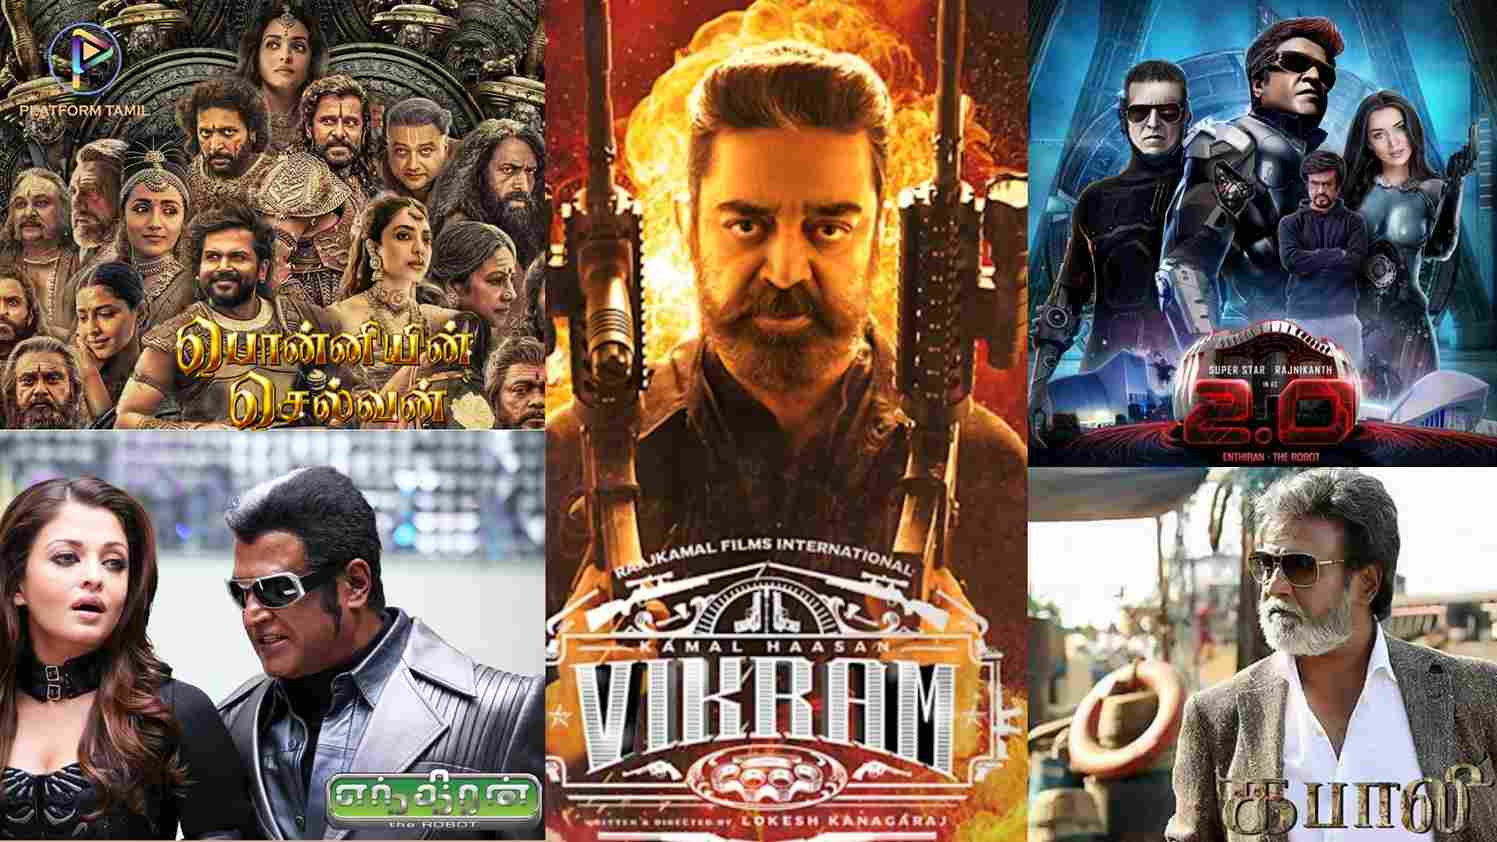 highest grossing Tamil films abroad - Platformtamil